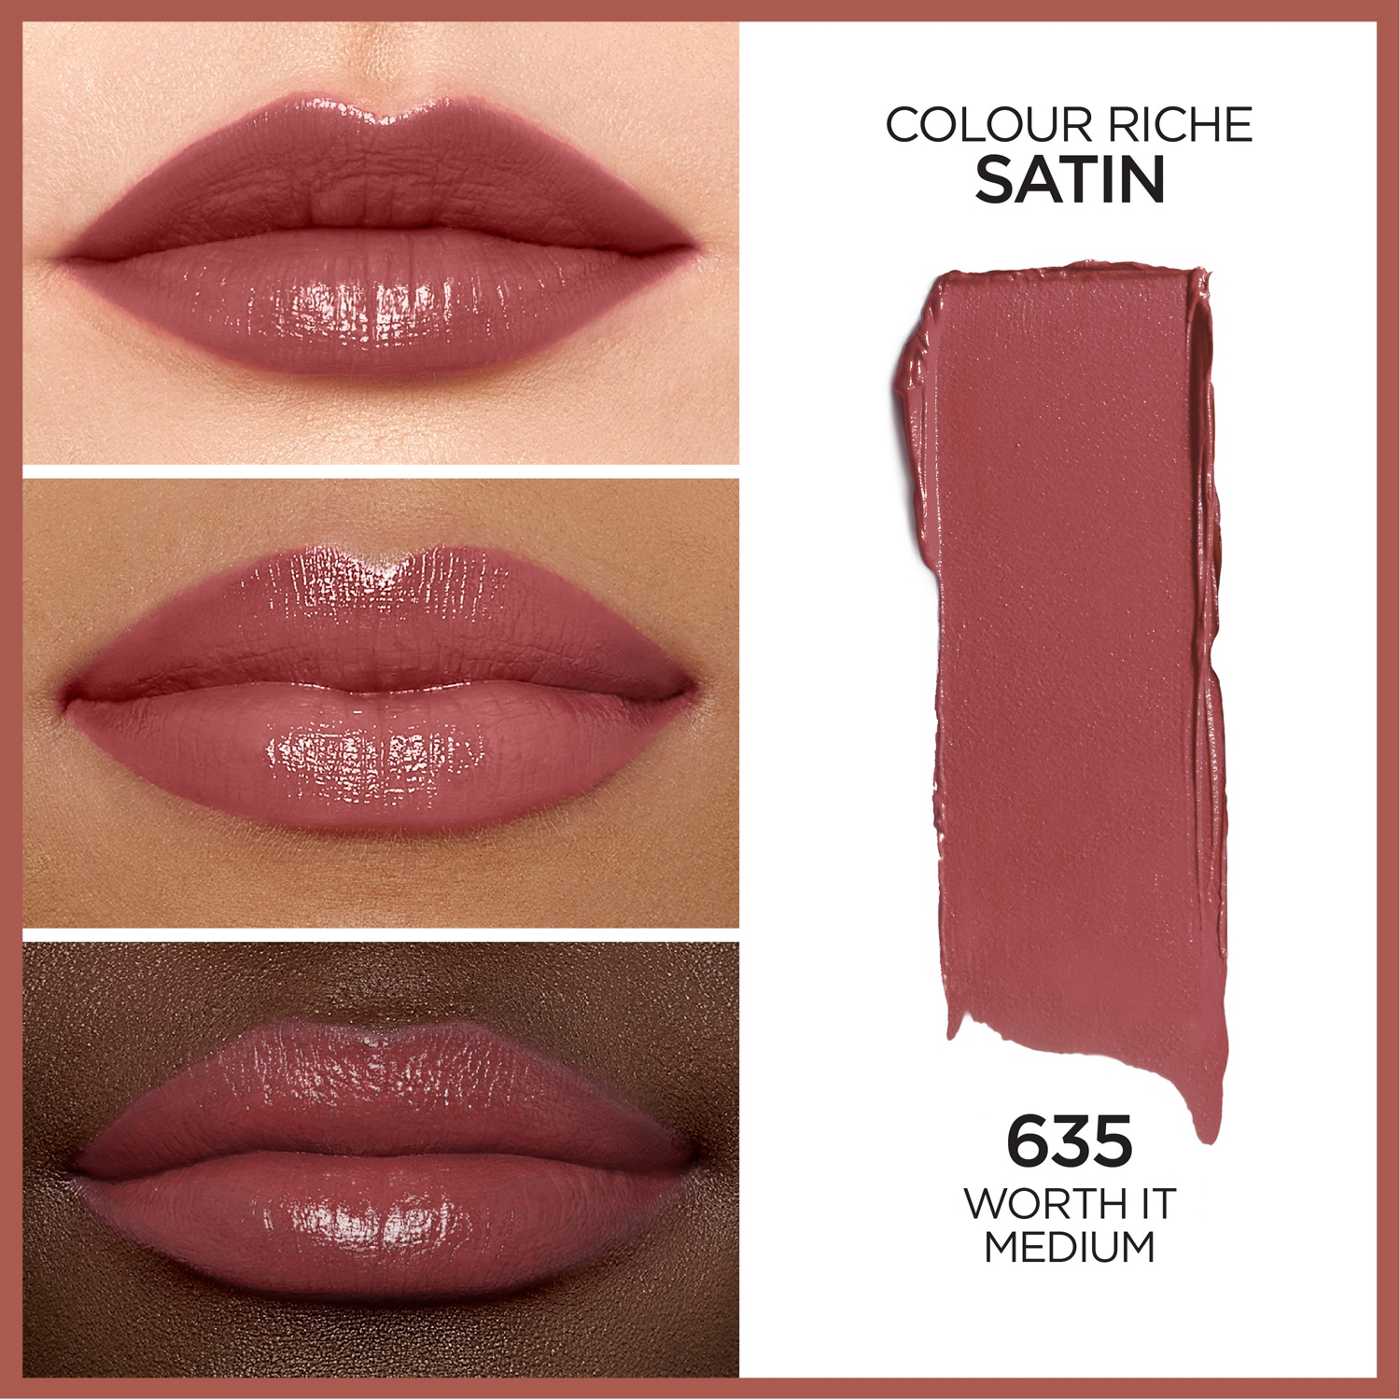 L'Oréal Paris Colour Riche Satin Lipstick - Worth It Medium; image 3 of 5